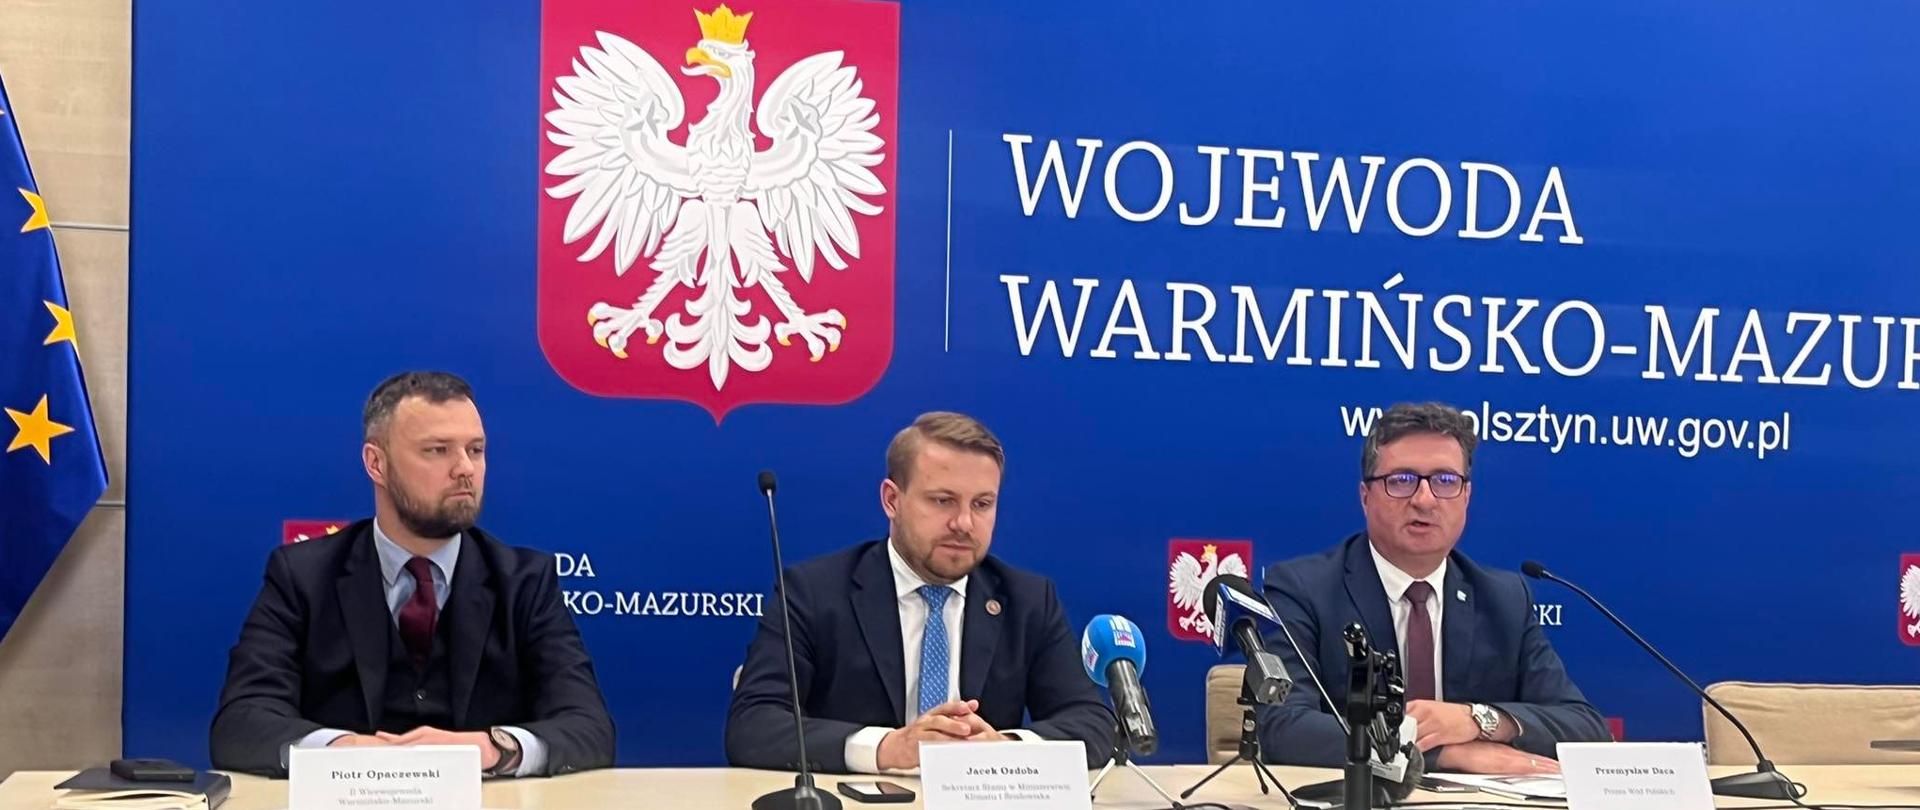 Przy stole w siedzibie Urzędu Wojewódzkiego w trakcie konferencji prasowej siedzą Wiceminister klimatu i środowiska, Wicewojewoda Warmińsko-Mazurski oraz Prezes Wód Polskich